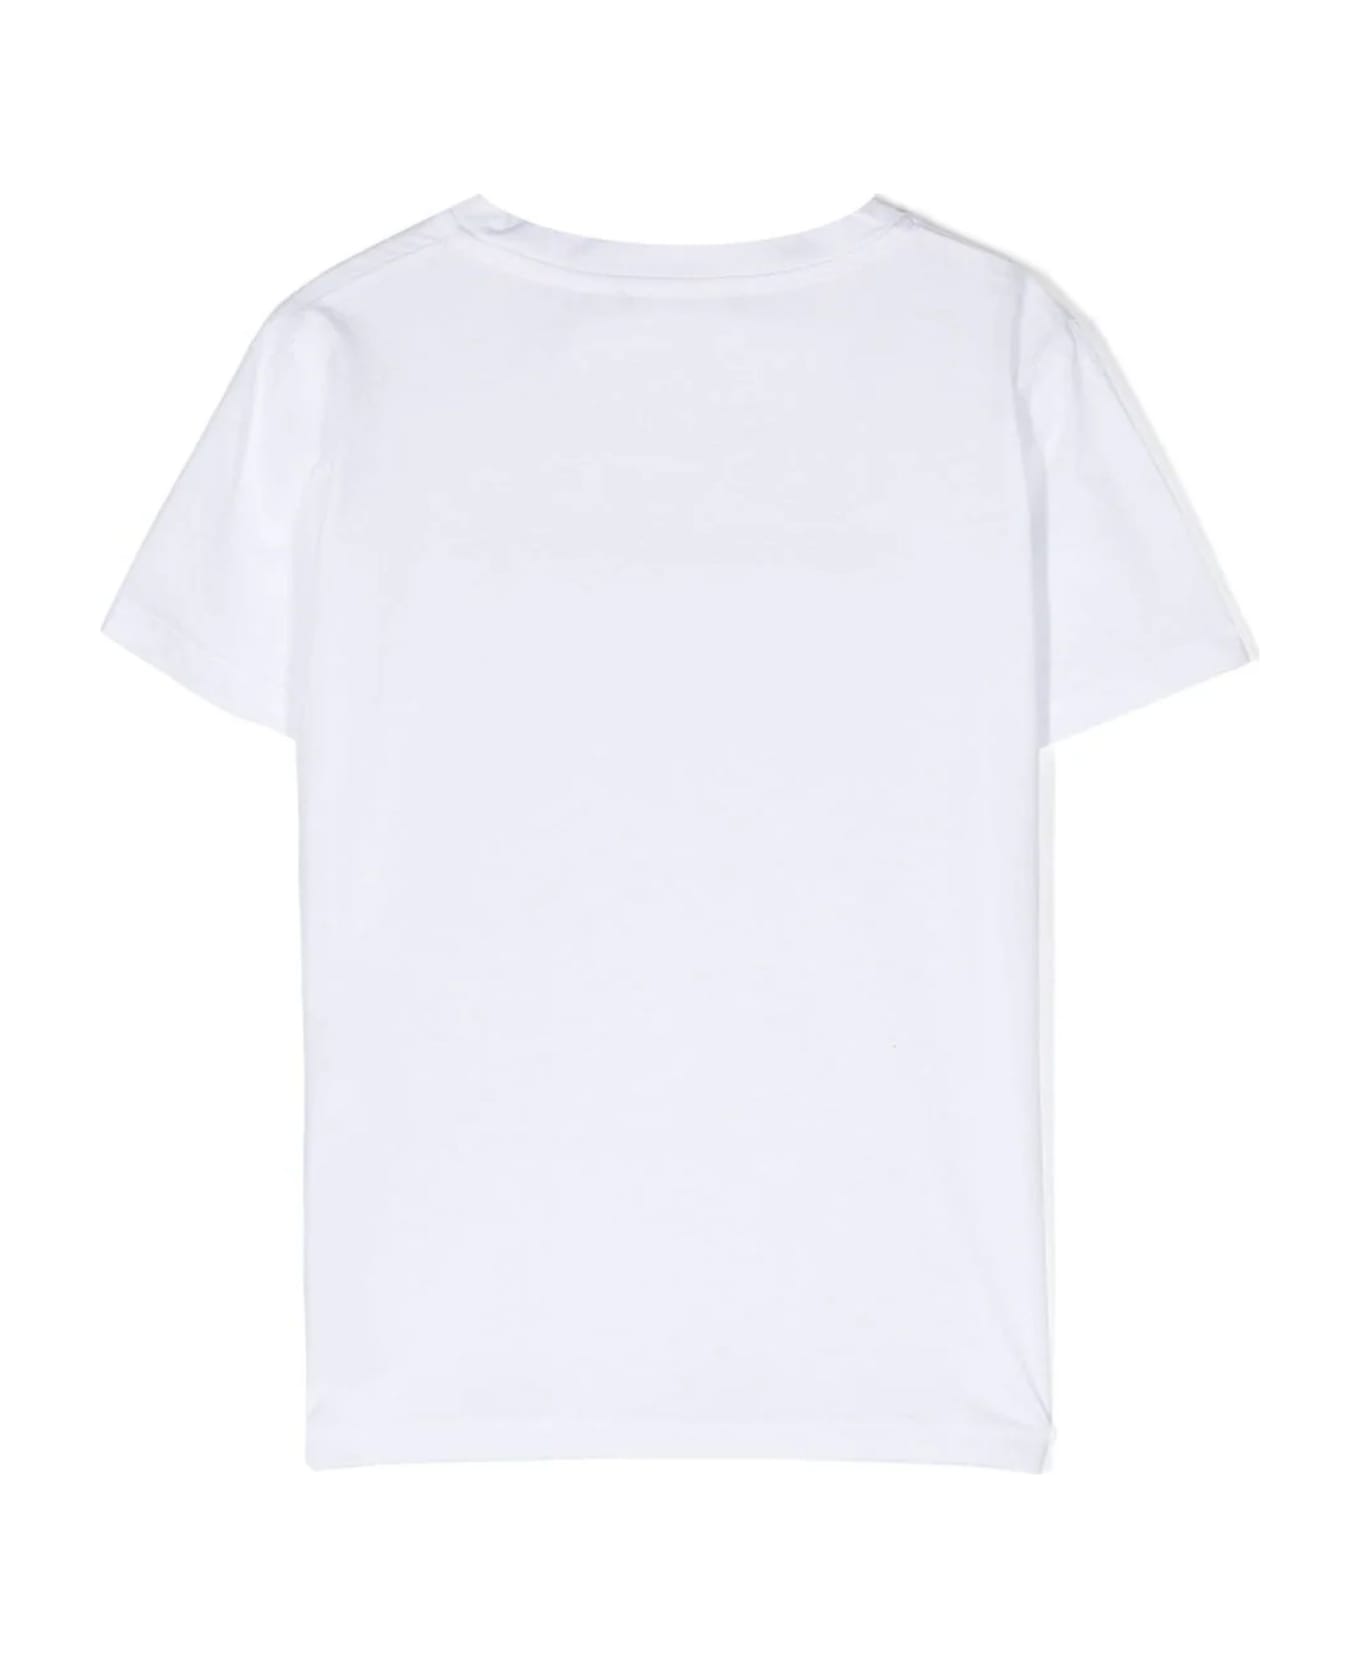 Emporio Armani T-shirts And Polos White - White